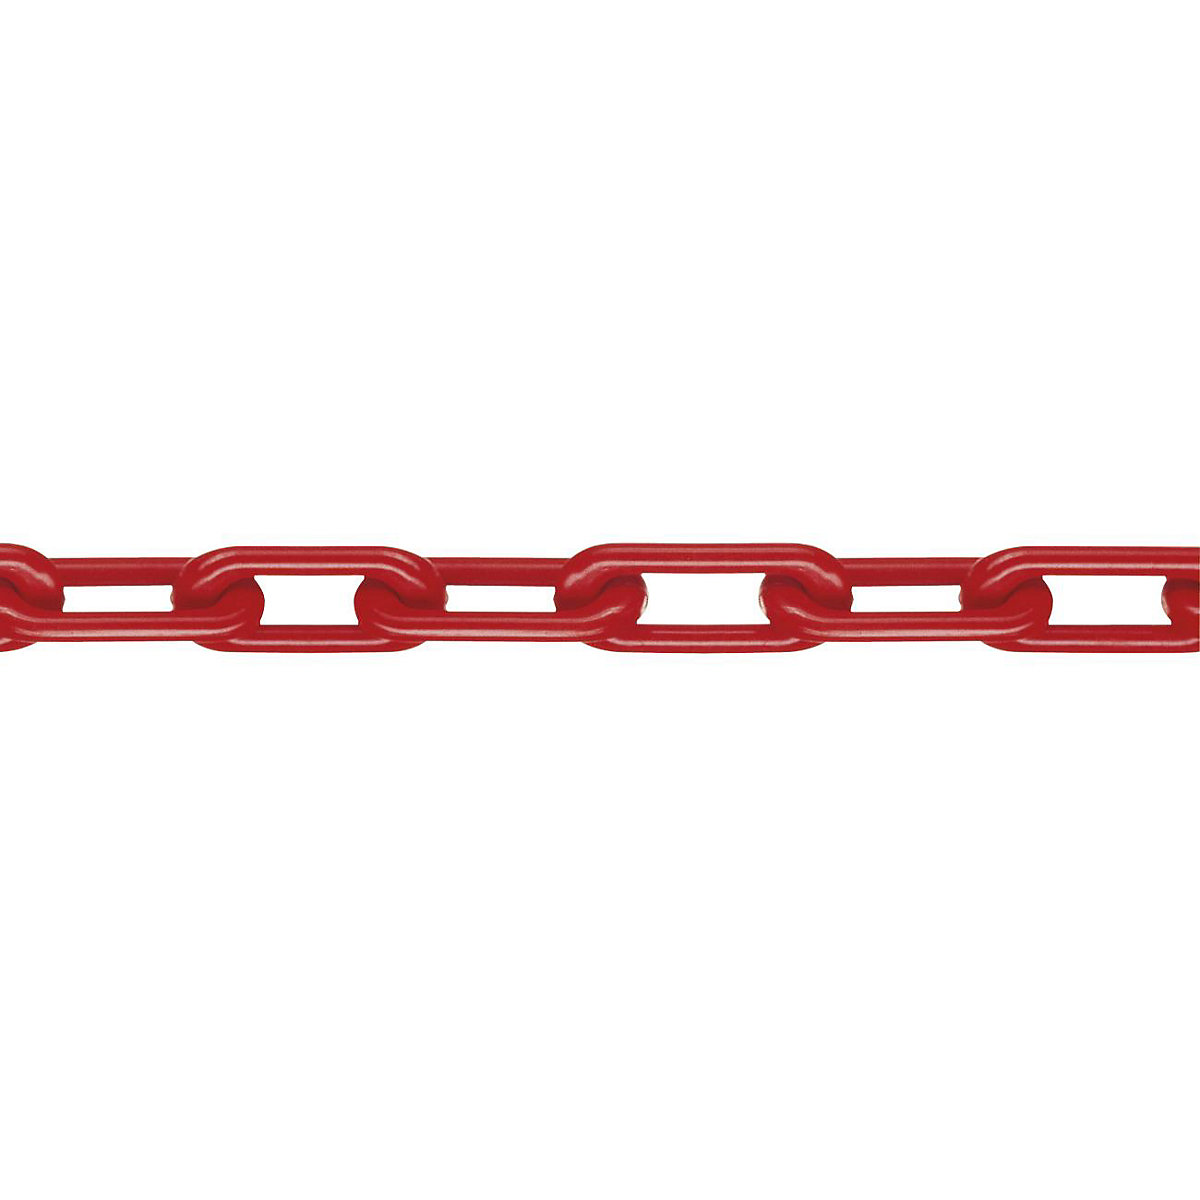 Łańcuch z nylonu, jakość MNK 8, dł. wiązki 25 m, czerwony-5